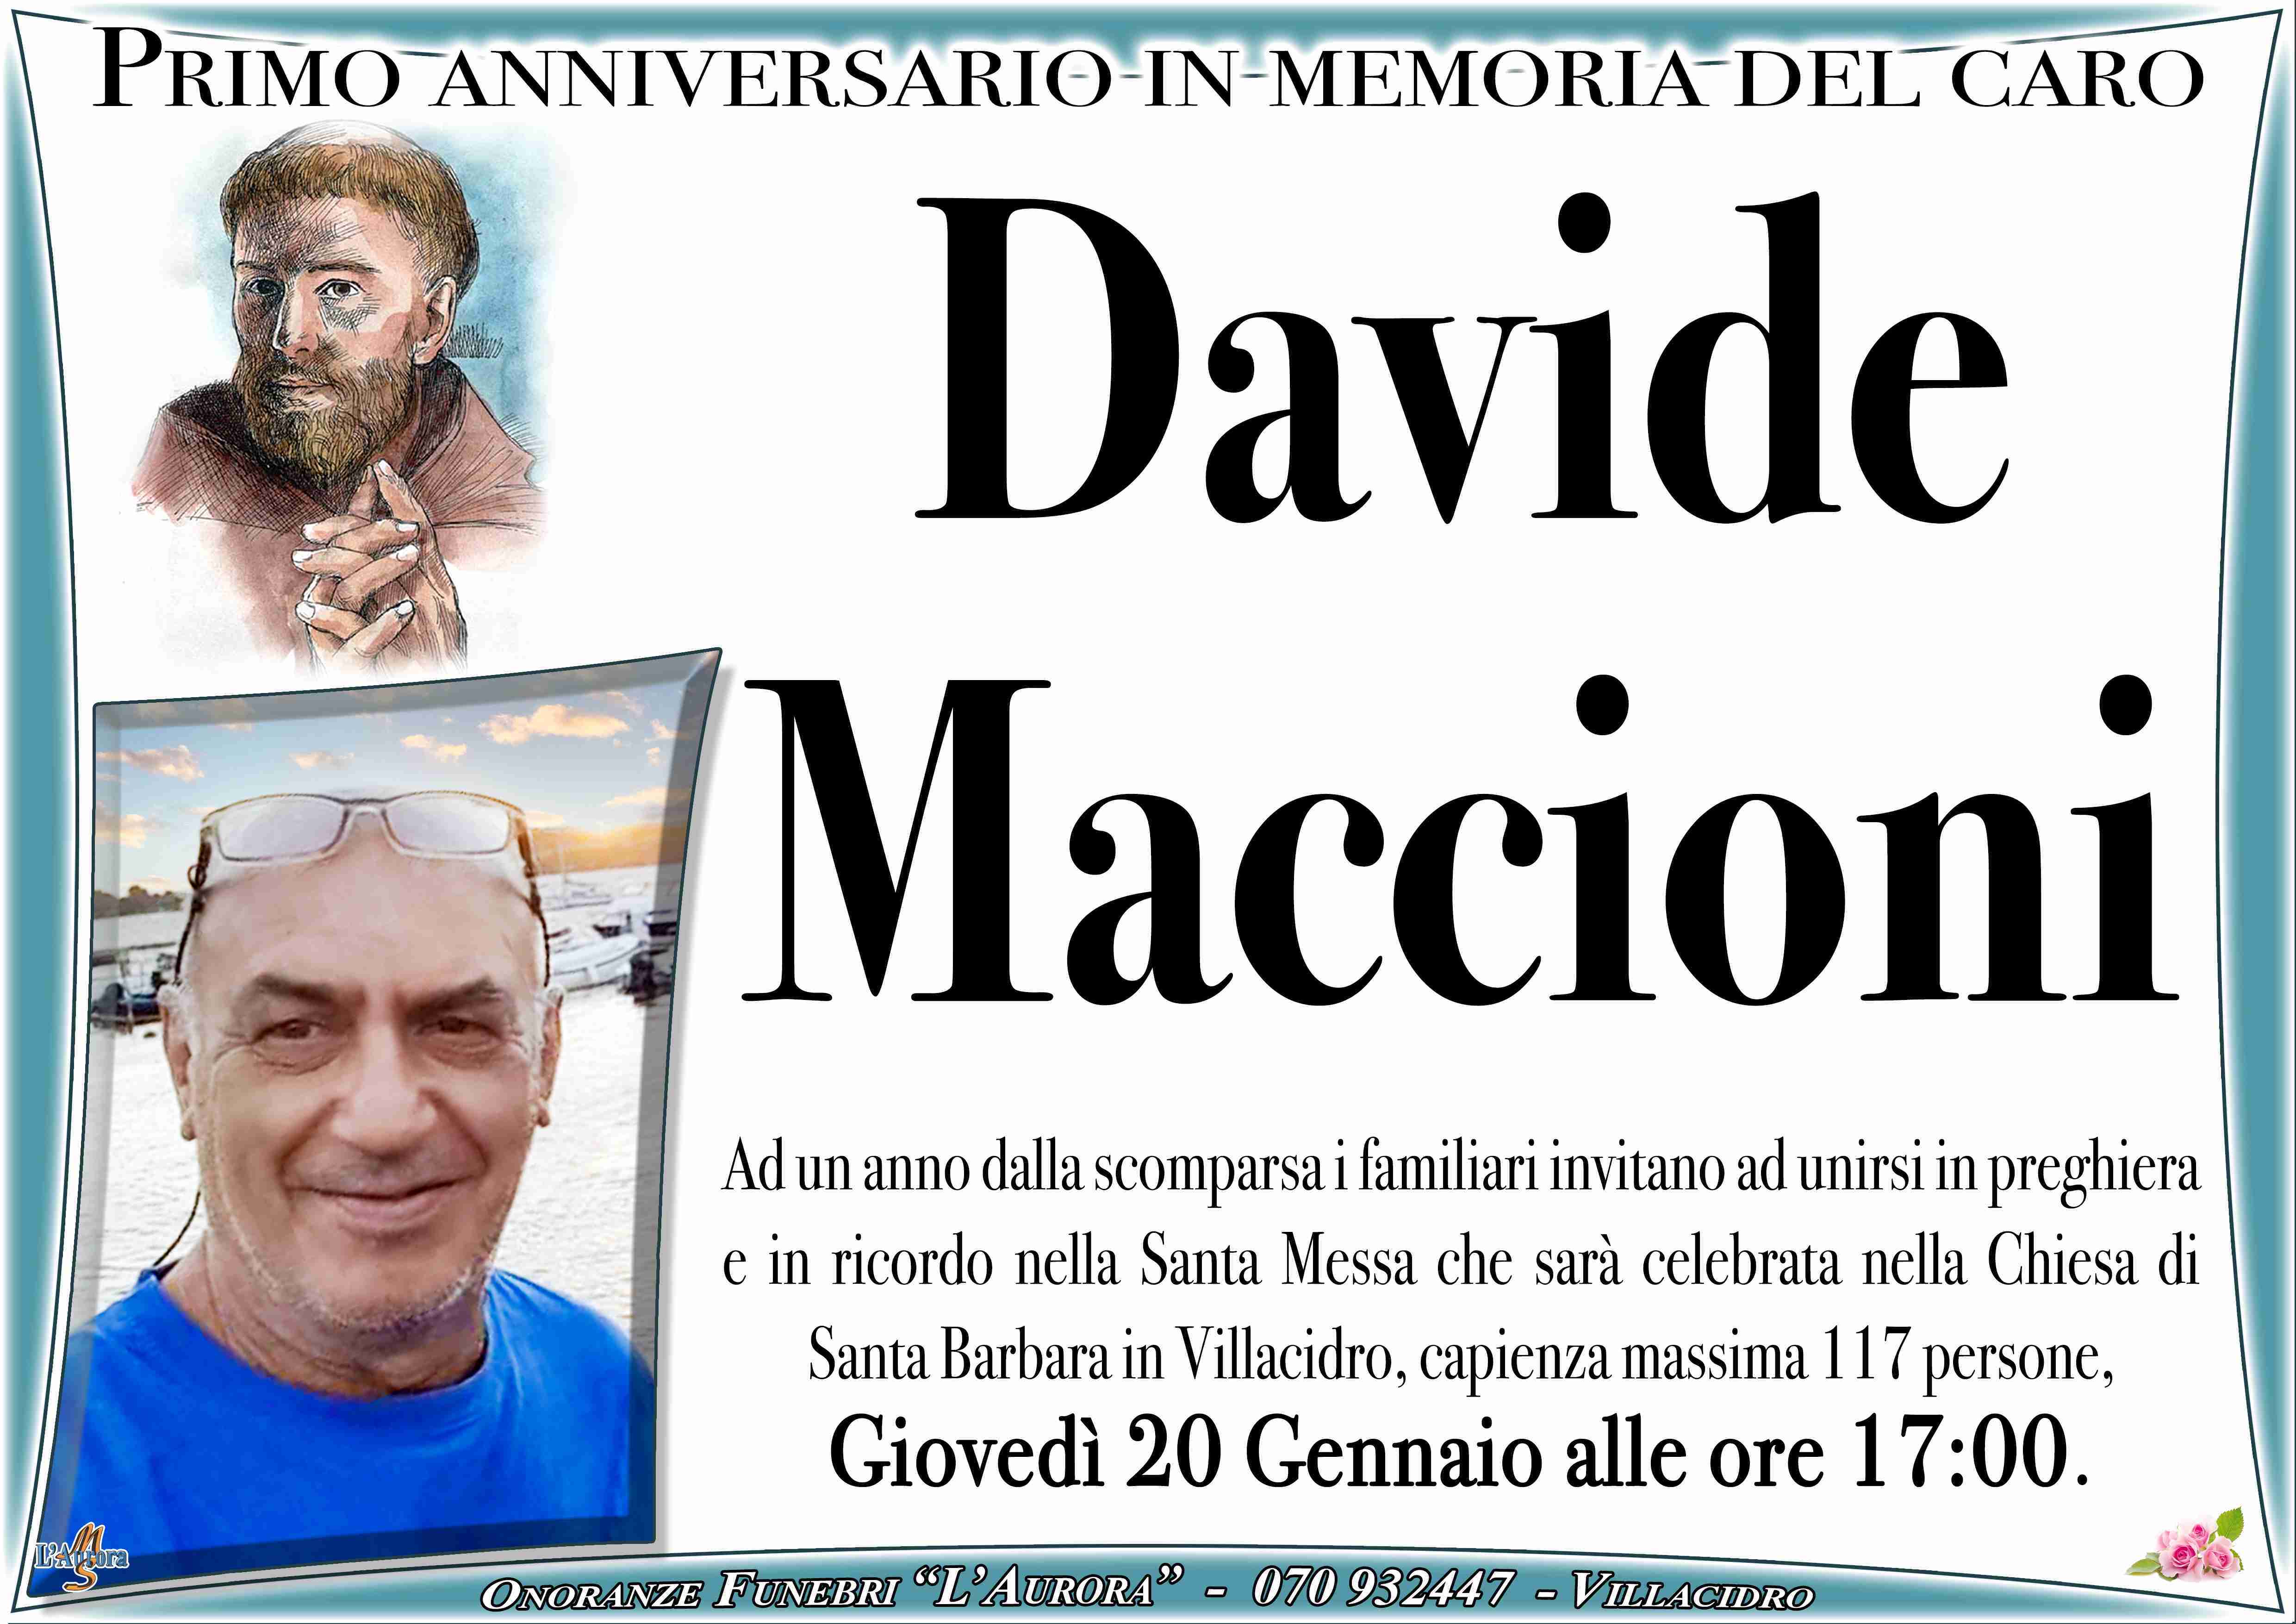 Davide Maccioni